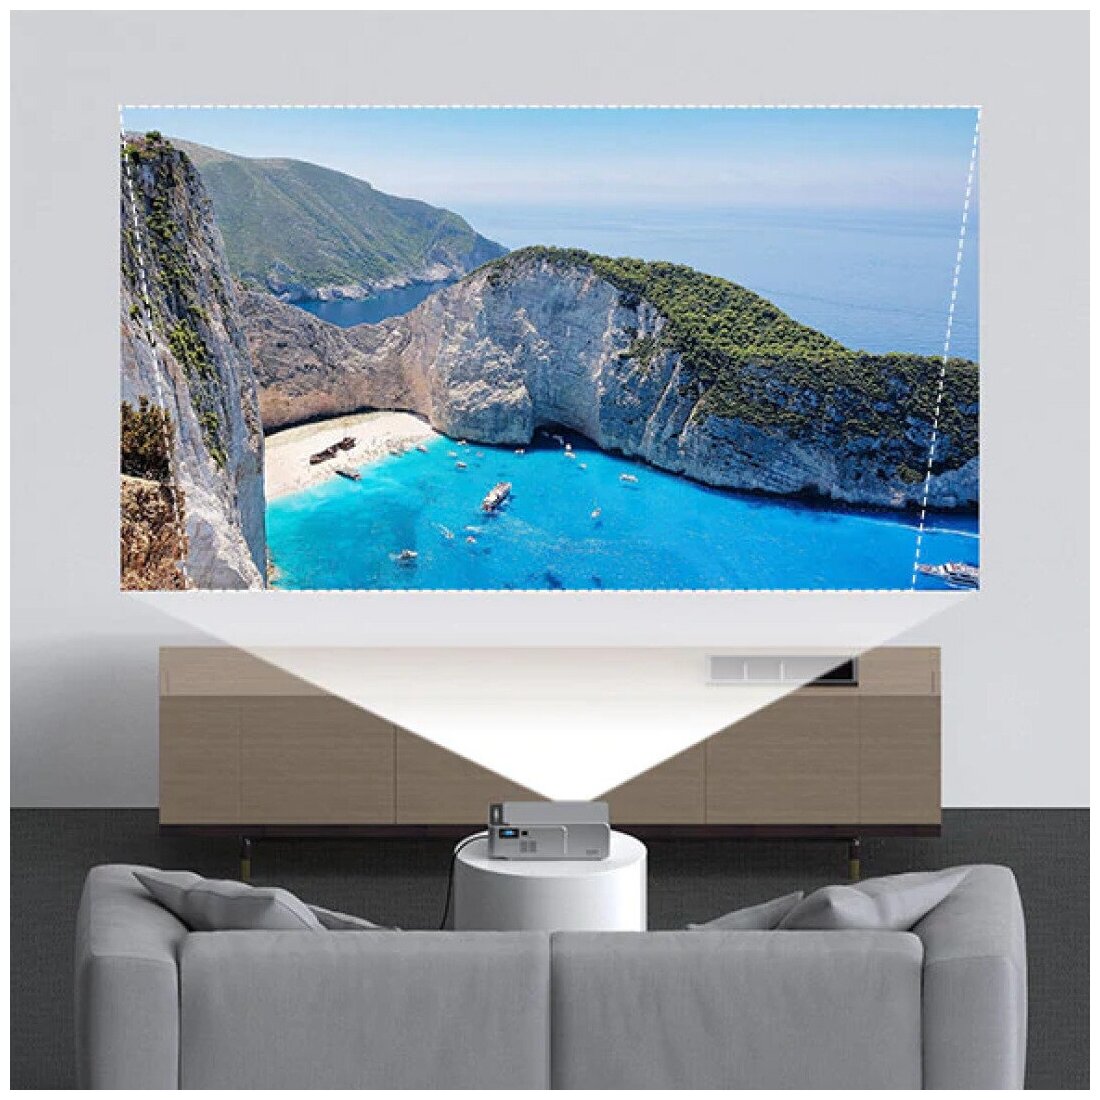 Мини проектор UNIC T6 Full HD / Домашний кинотеатр для фильмов и игр (светодиодный, 1920x1080, 3D, Android, Wi-Fi)